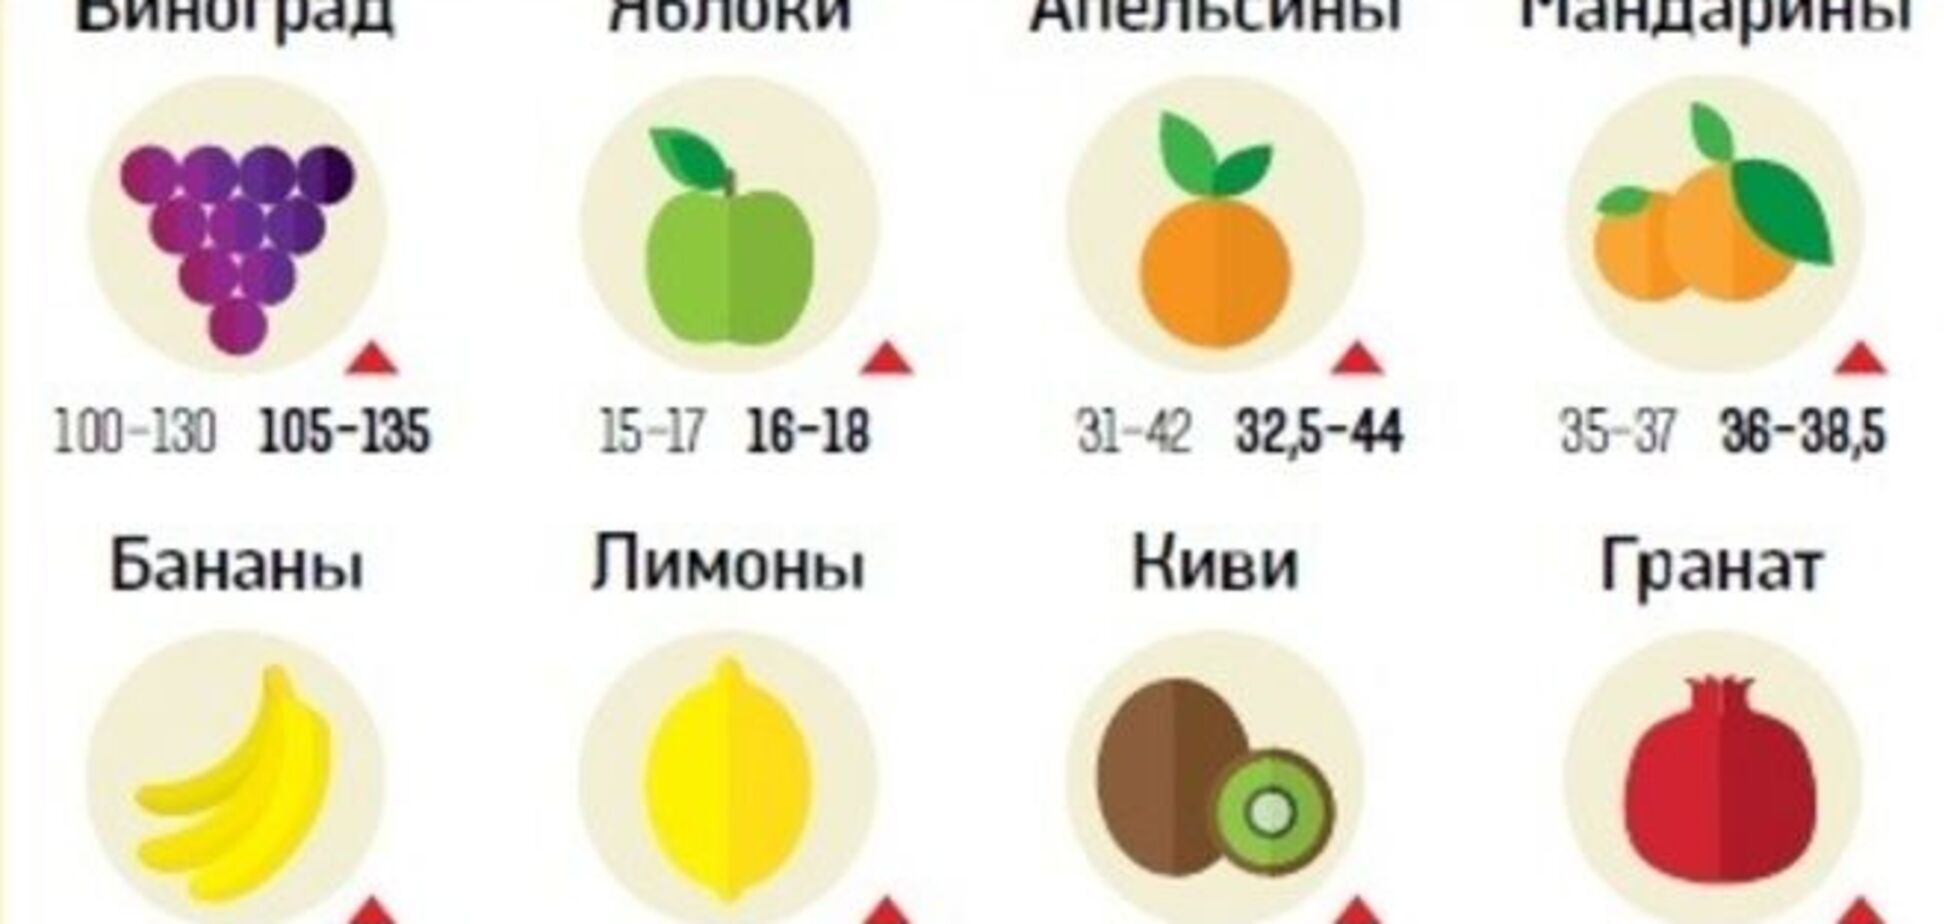 Борщ не по карману. Какие продукты подорожают в Украине в марте: инфографика